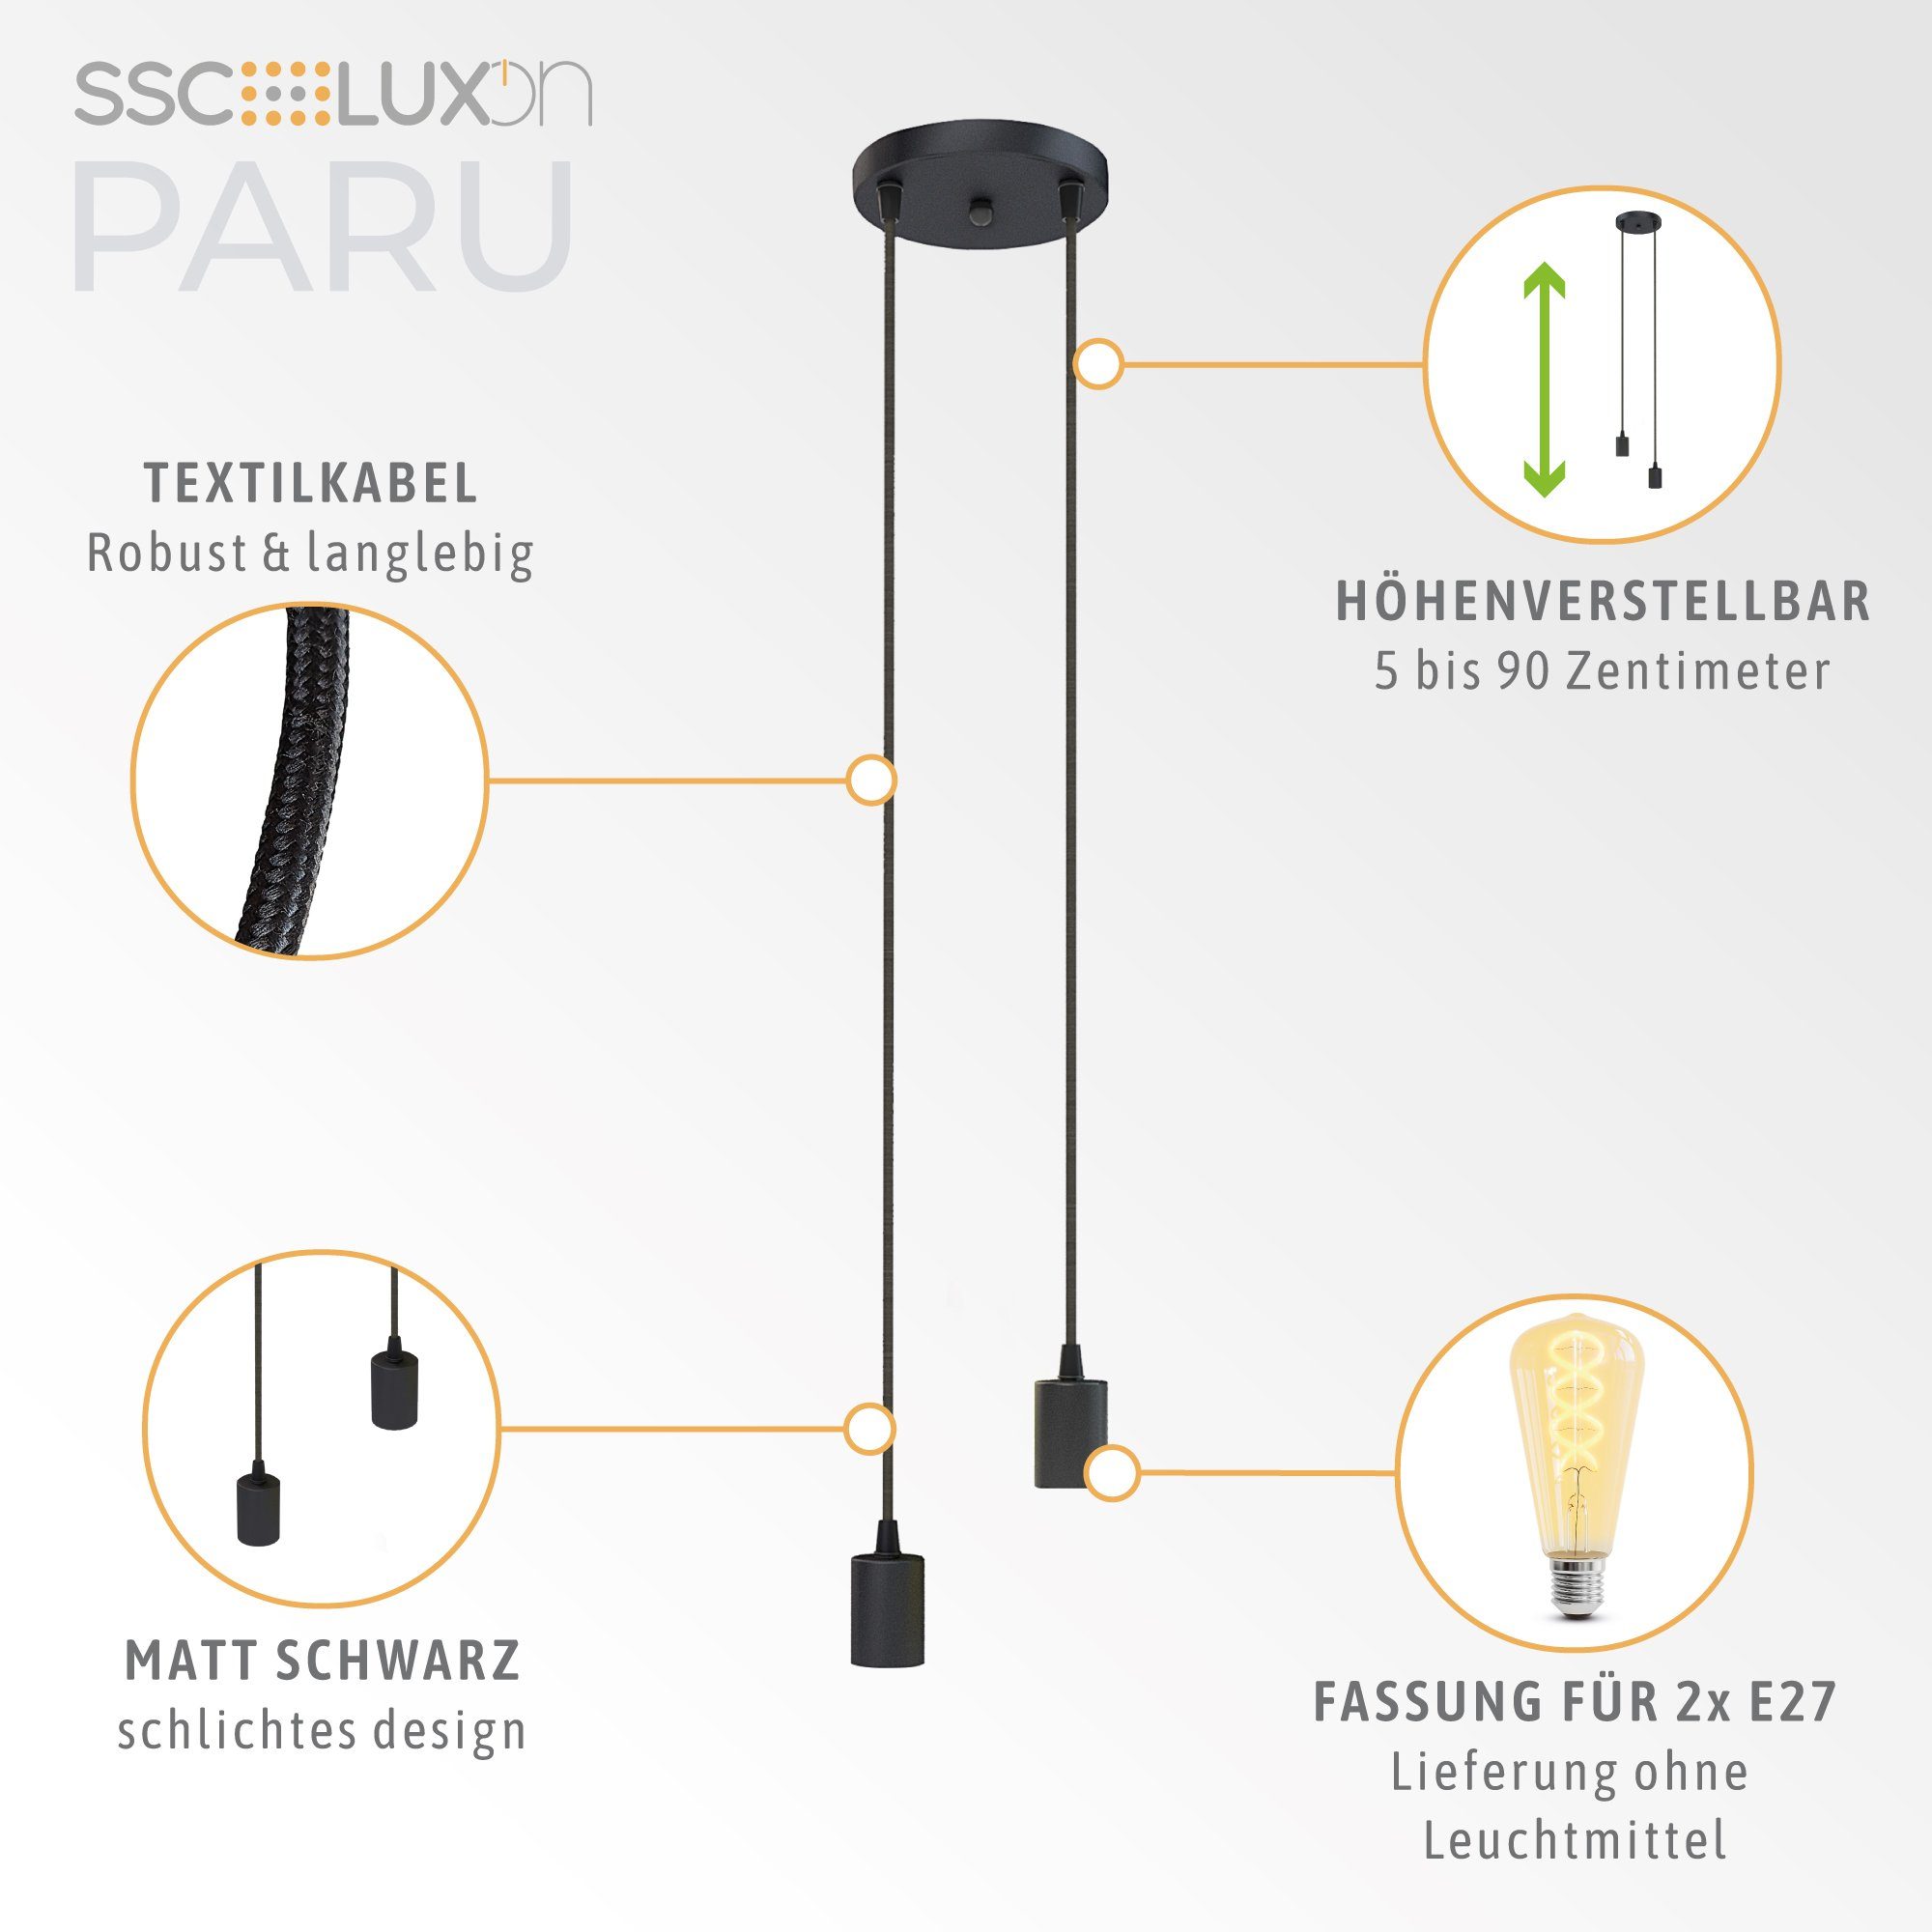 E27 Fassung 2-flammig LED-Hängeleuchte PARU Pendelleuchte Textilkabel SSC-LUXon schwarz